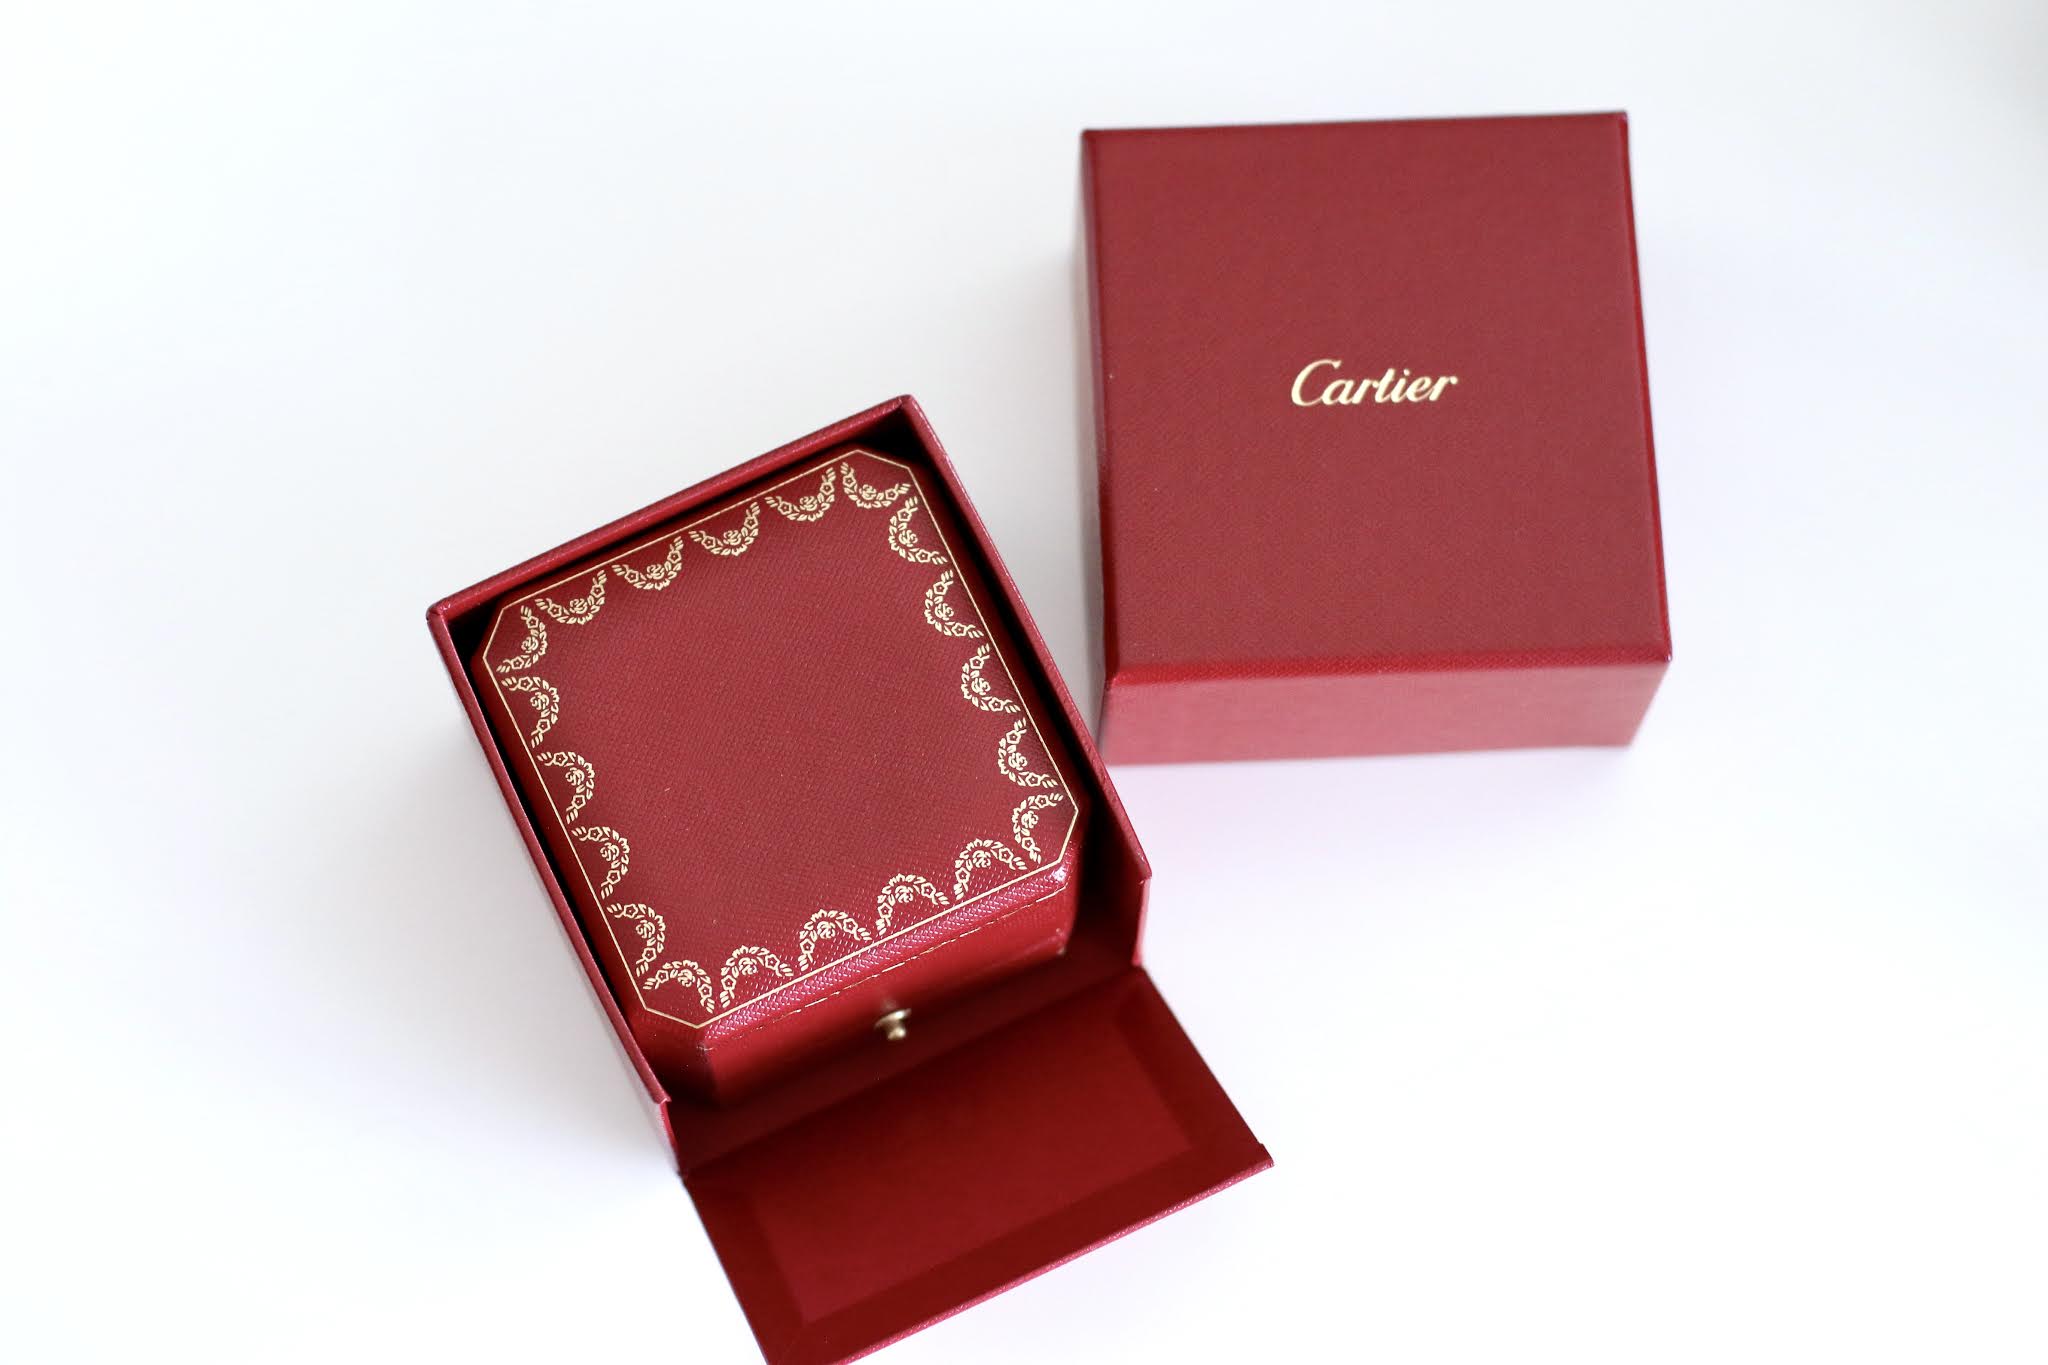 Cartier First Love